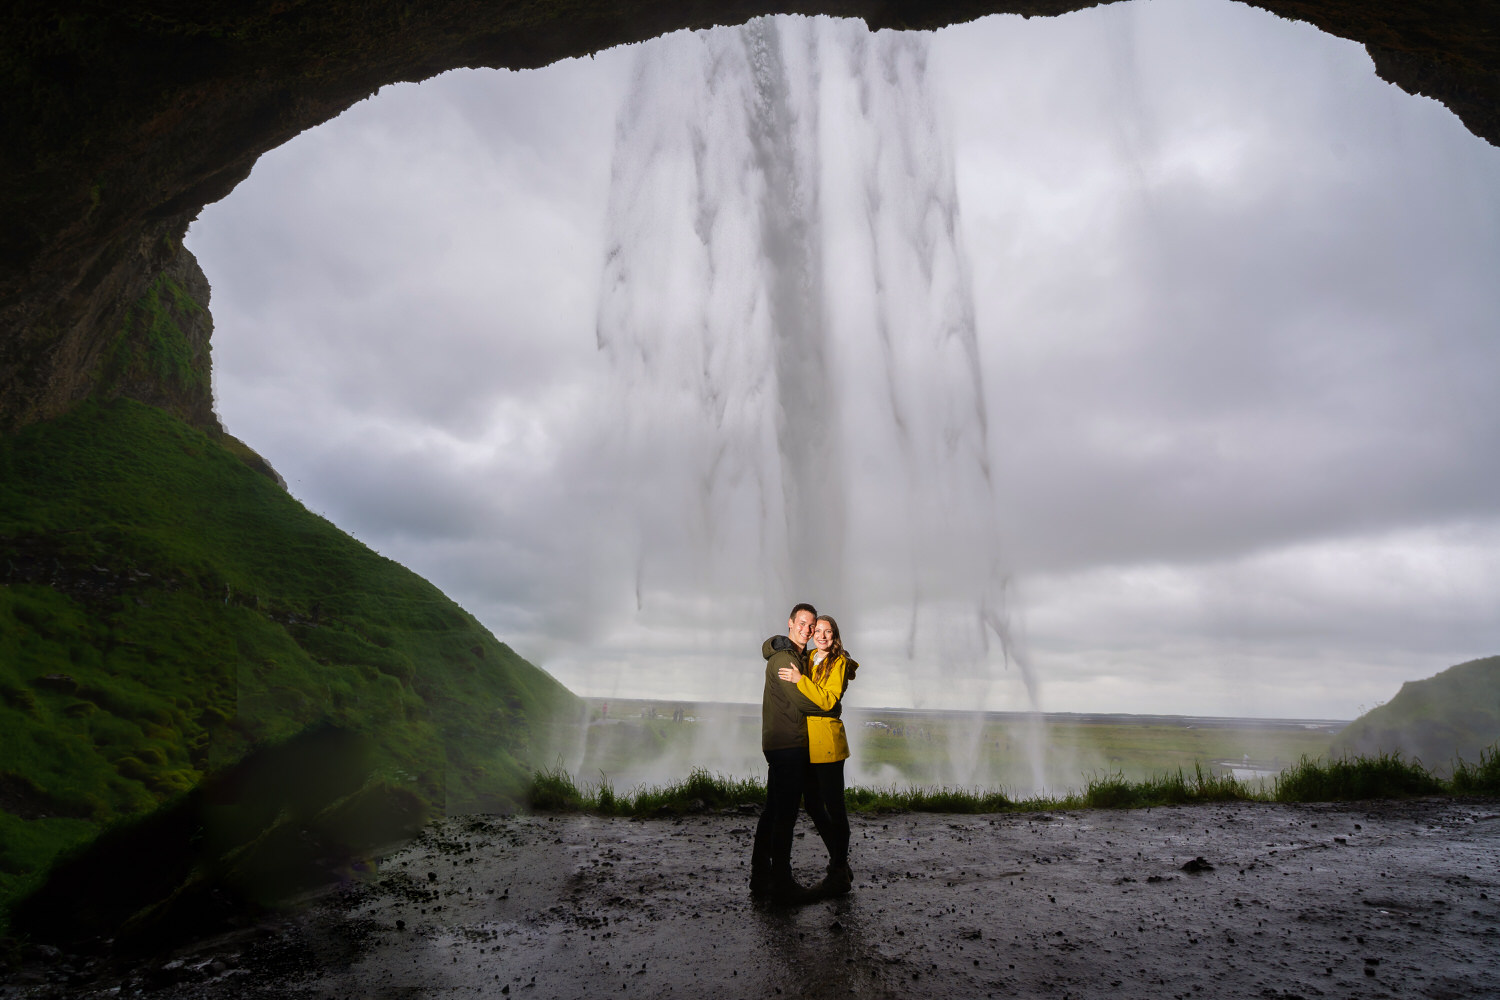 Wedding photographer Iceland - Nicole Chan